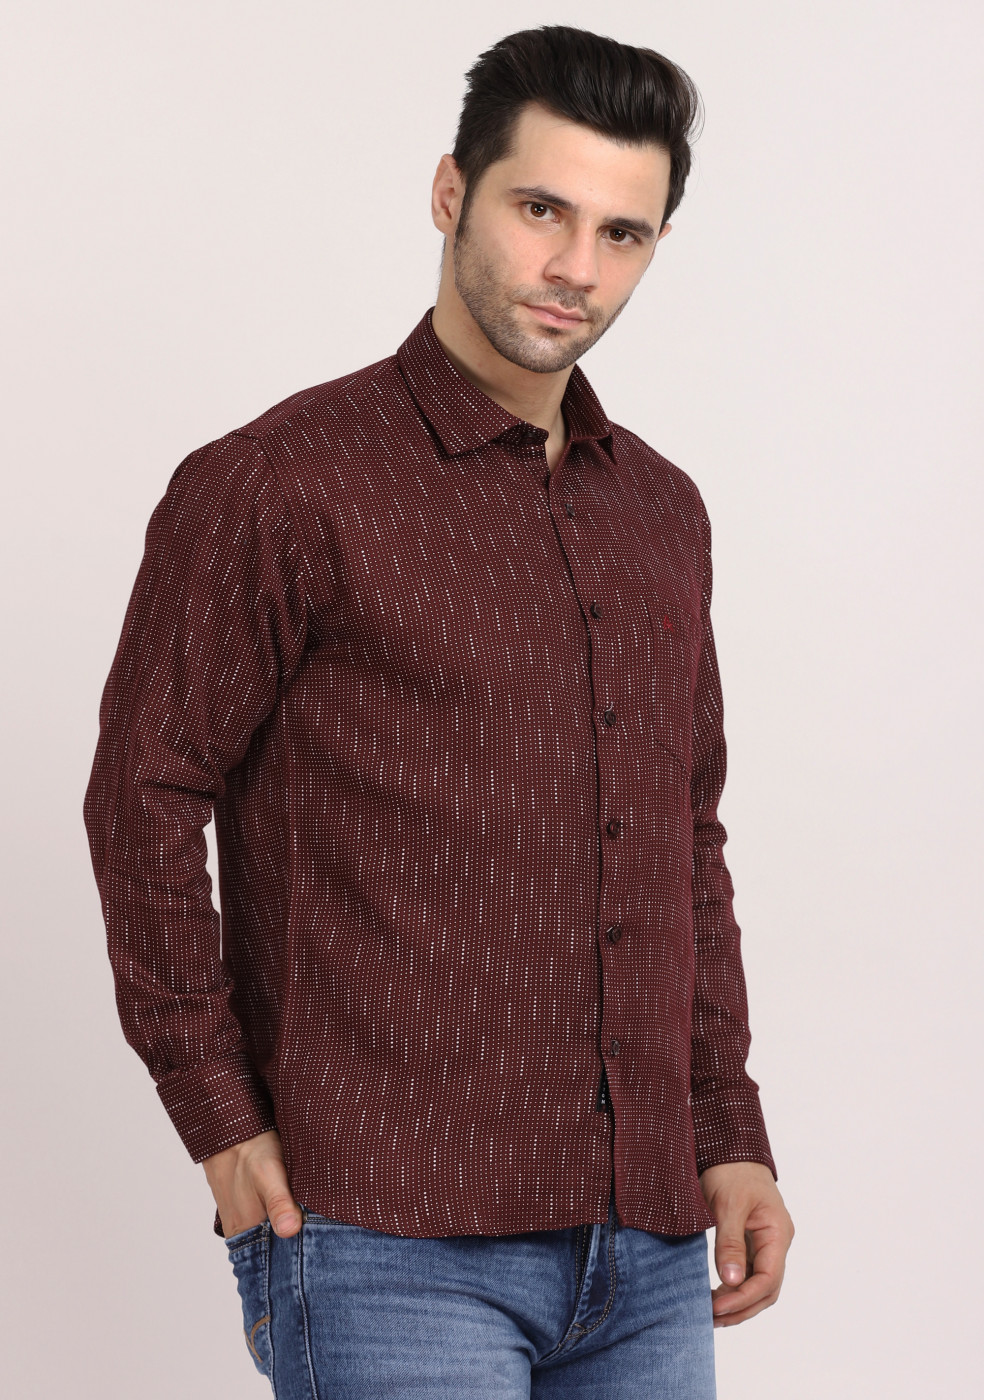 ASHTOM Maroon Print Regular Fit Cotton Shirt For Men